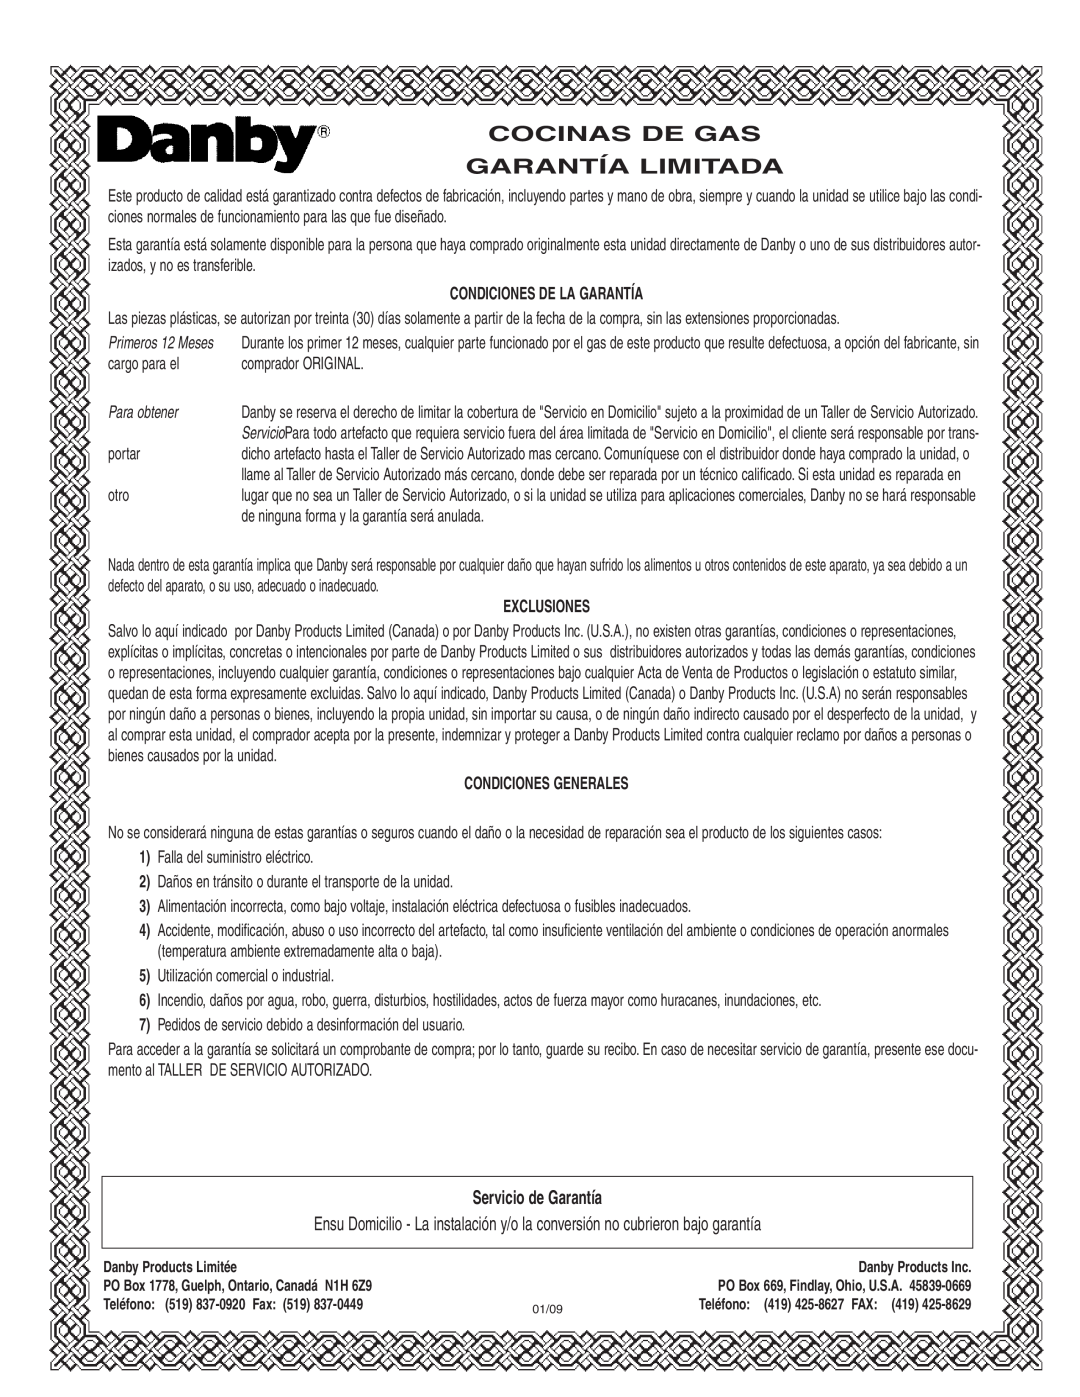 Danby DR2009WGLP Cocinas De Gas Garantía Limitada, Servicio de Garantía, Condiciones De La Garantía, Para obtener 